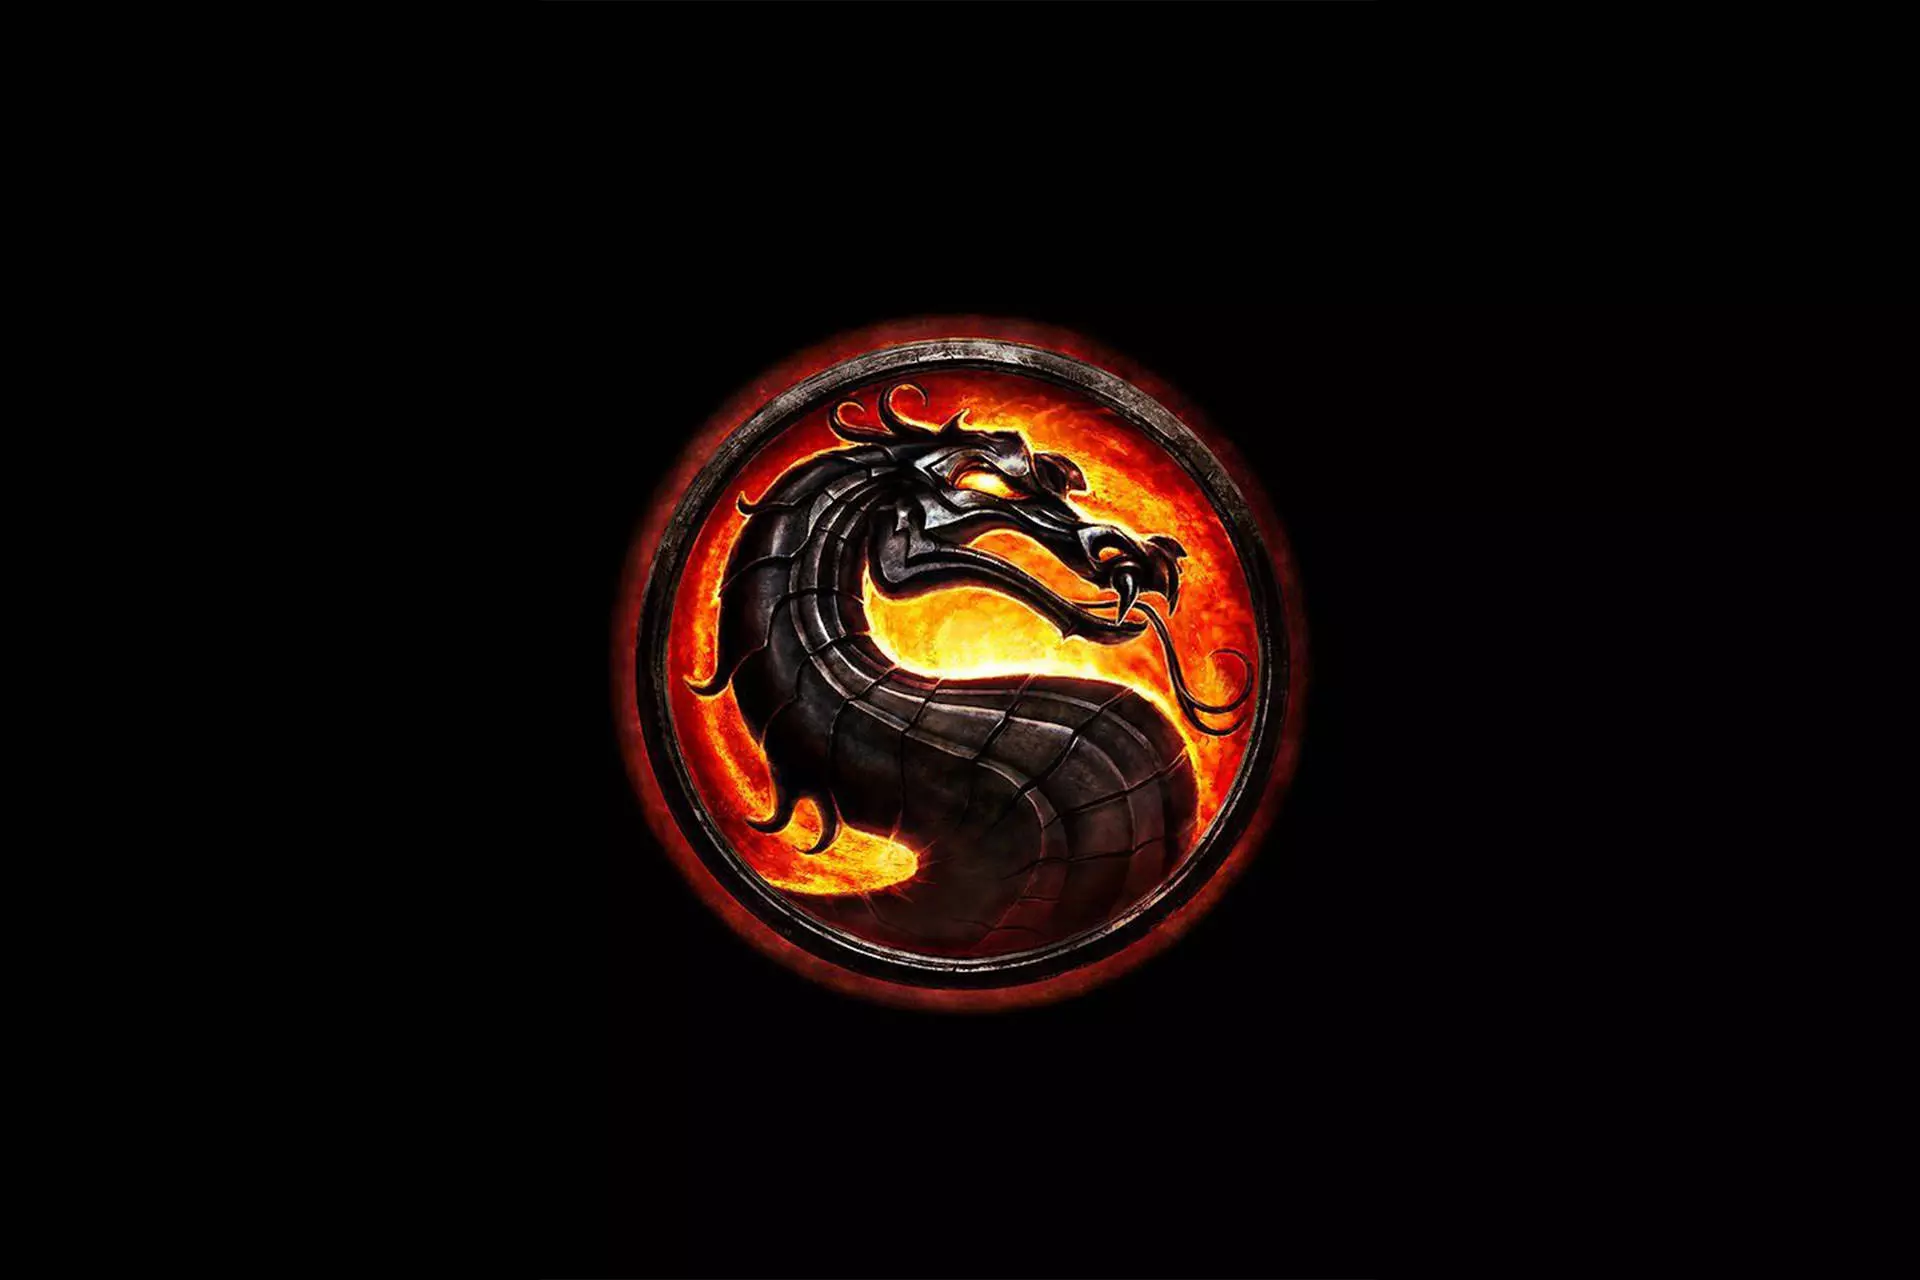 دفتر خاطرات: خشم و خون، آتش و یخ، انتقام و مرگ؛ به Mortal Kombat خوش آمدید